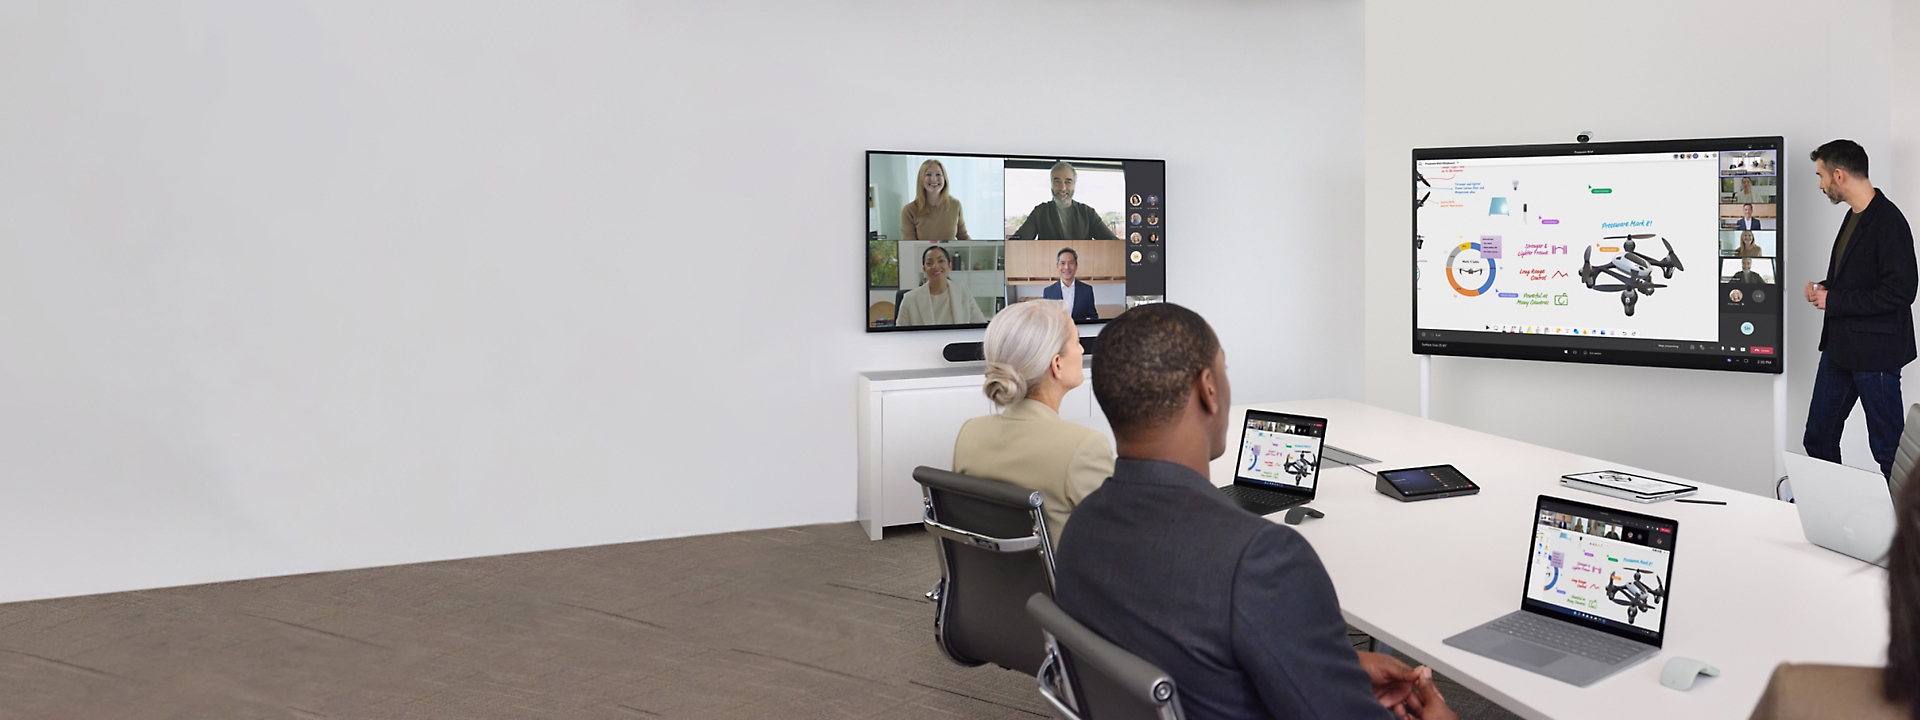 회의실에서 텔레비전 한 대에는 Teams 영상 통화가 표시되고 다른 한 대에는 프레젠테이션이 표시된 상태로 모임을 하는 사람들